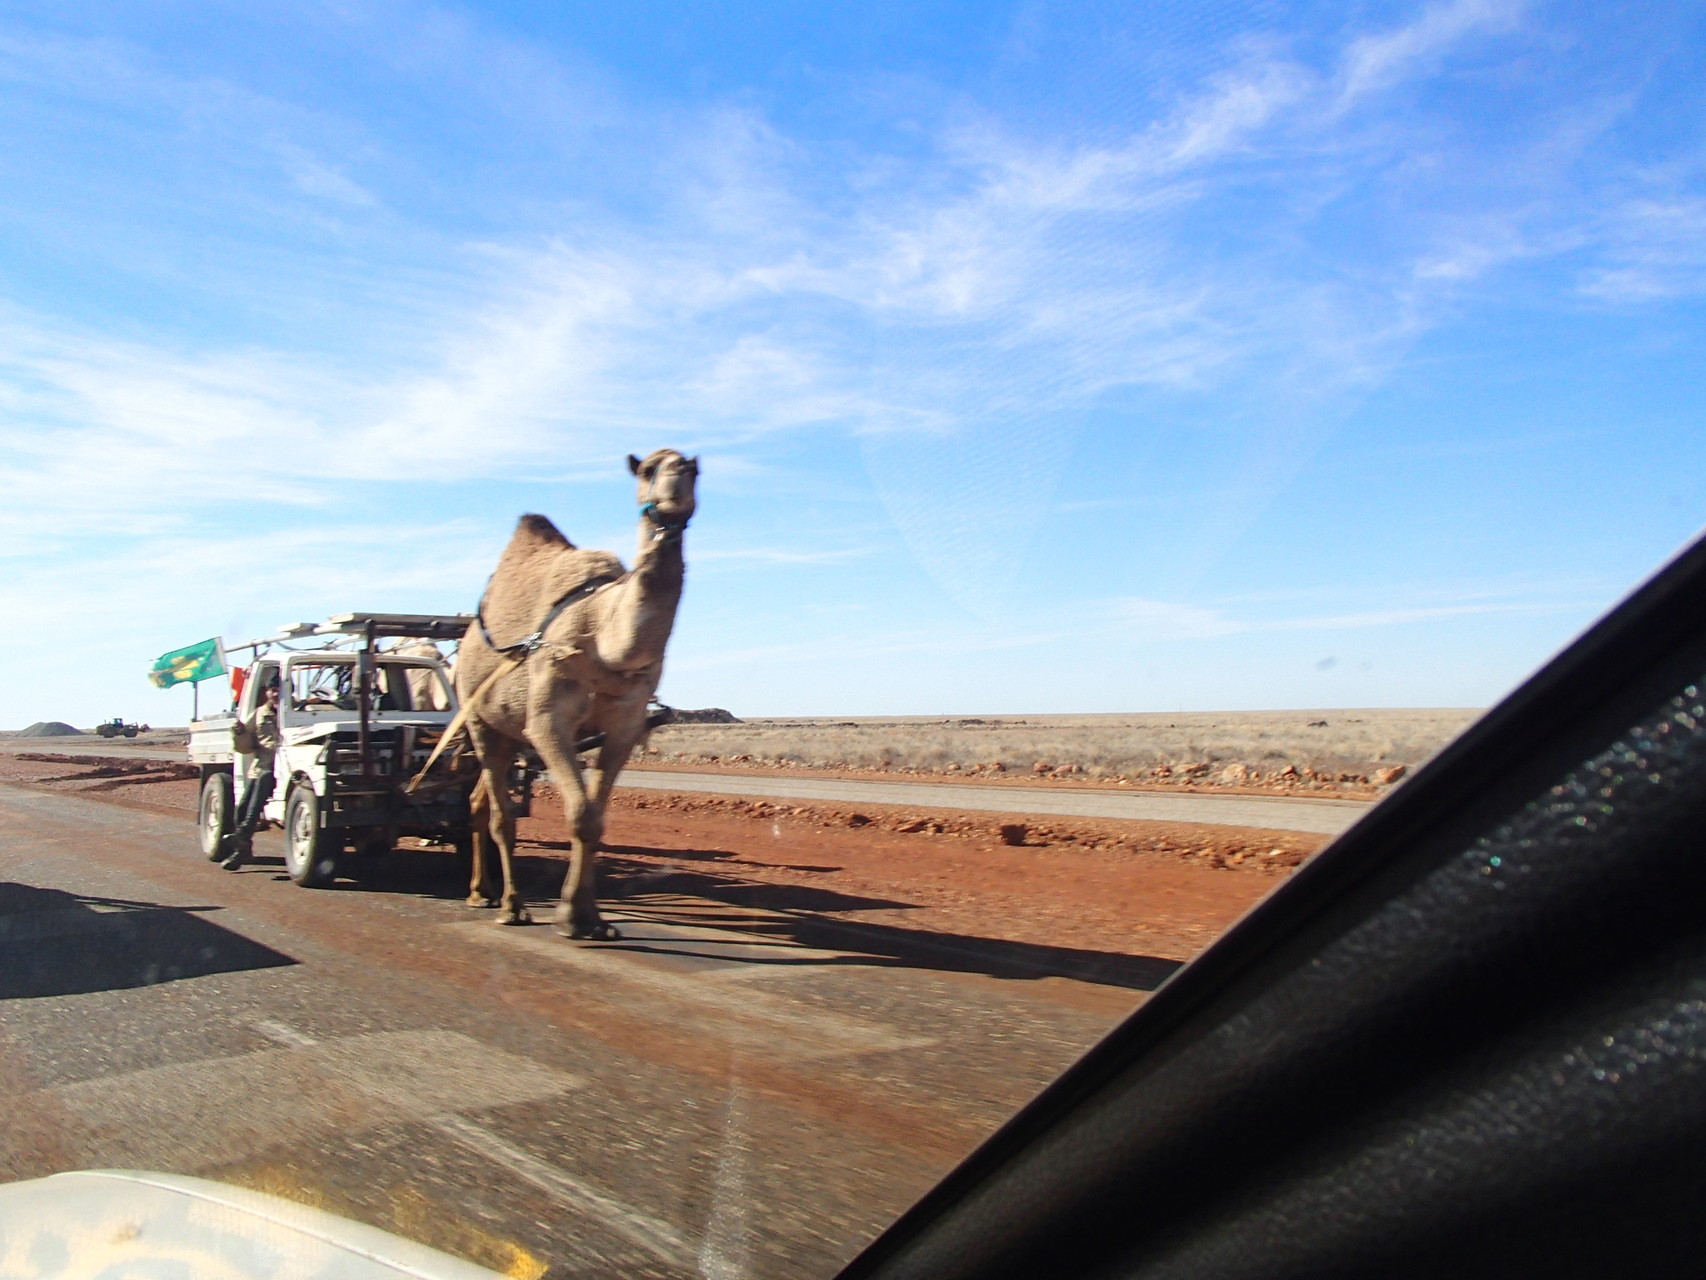 Mit einem Kamel auf Weltreise - auch nicht schlecht!